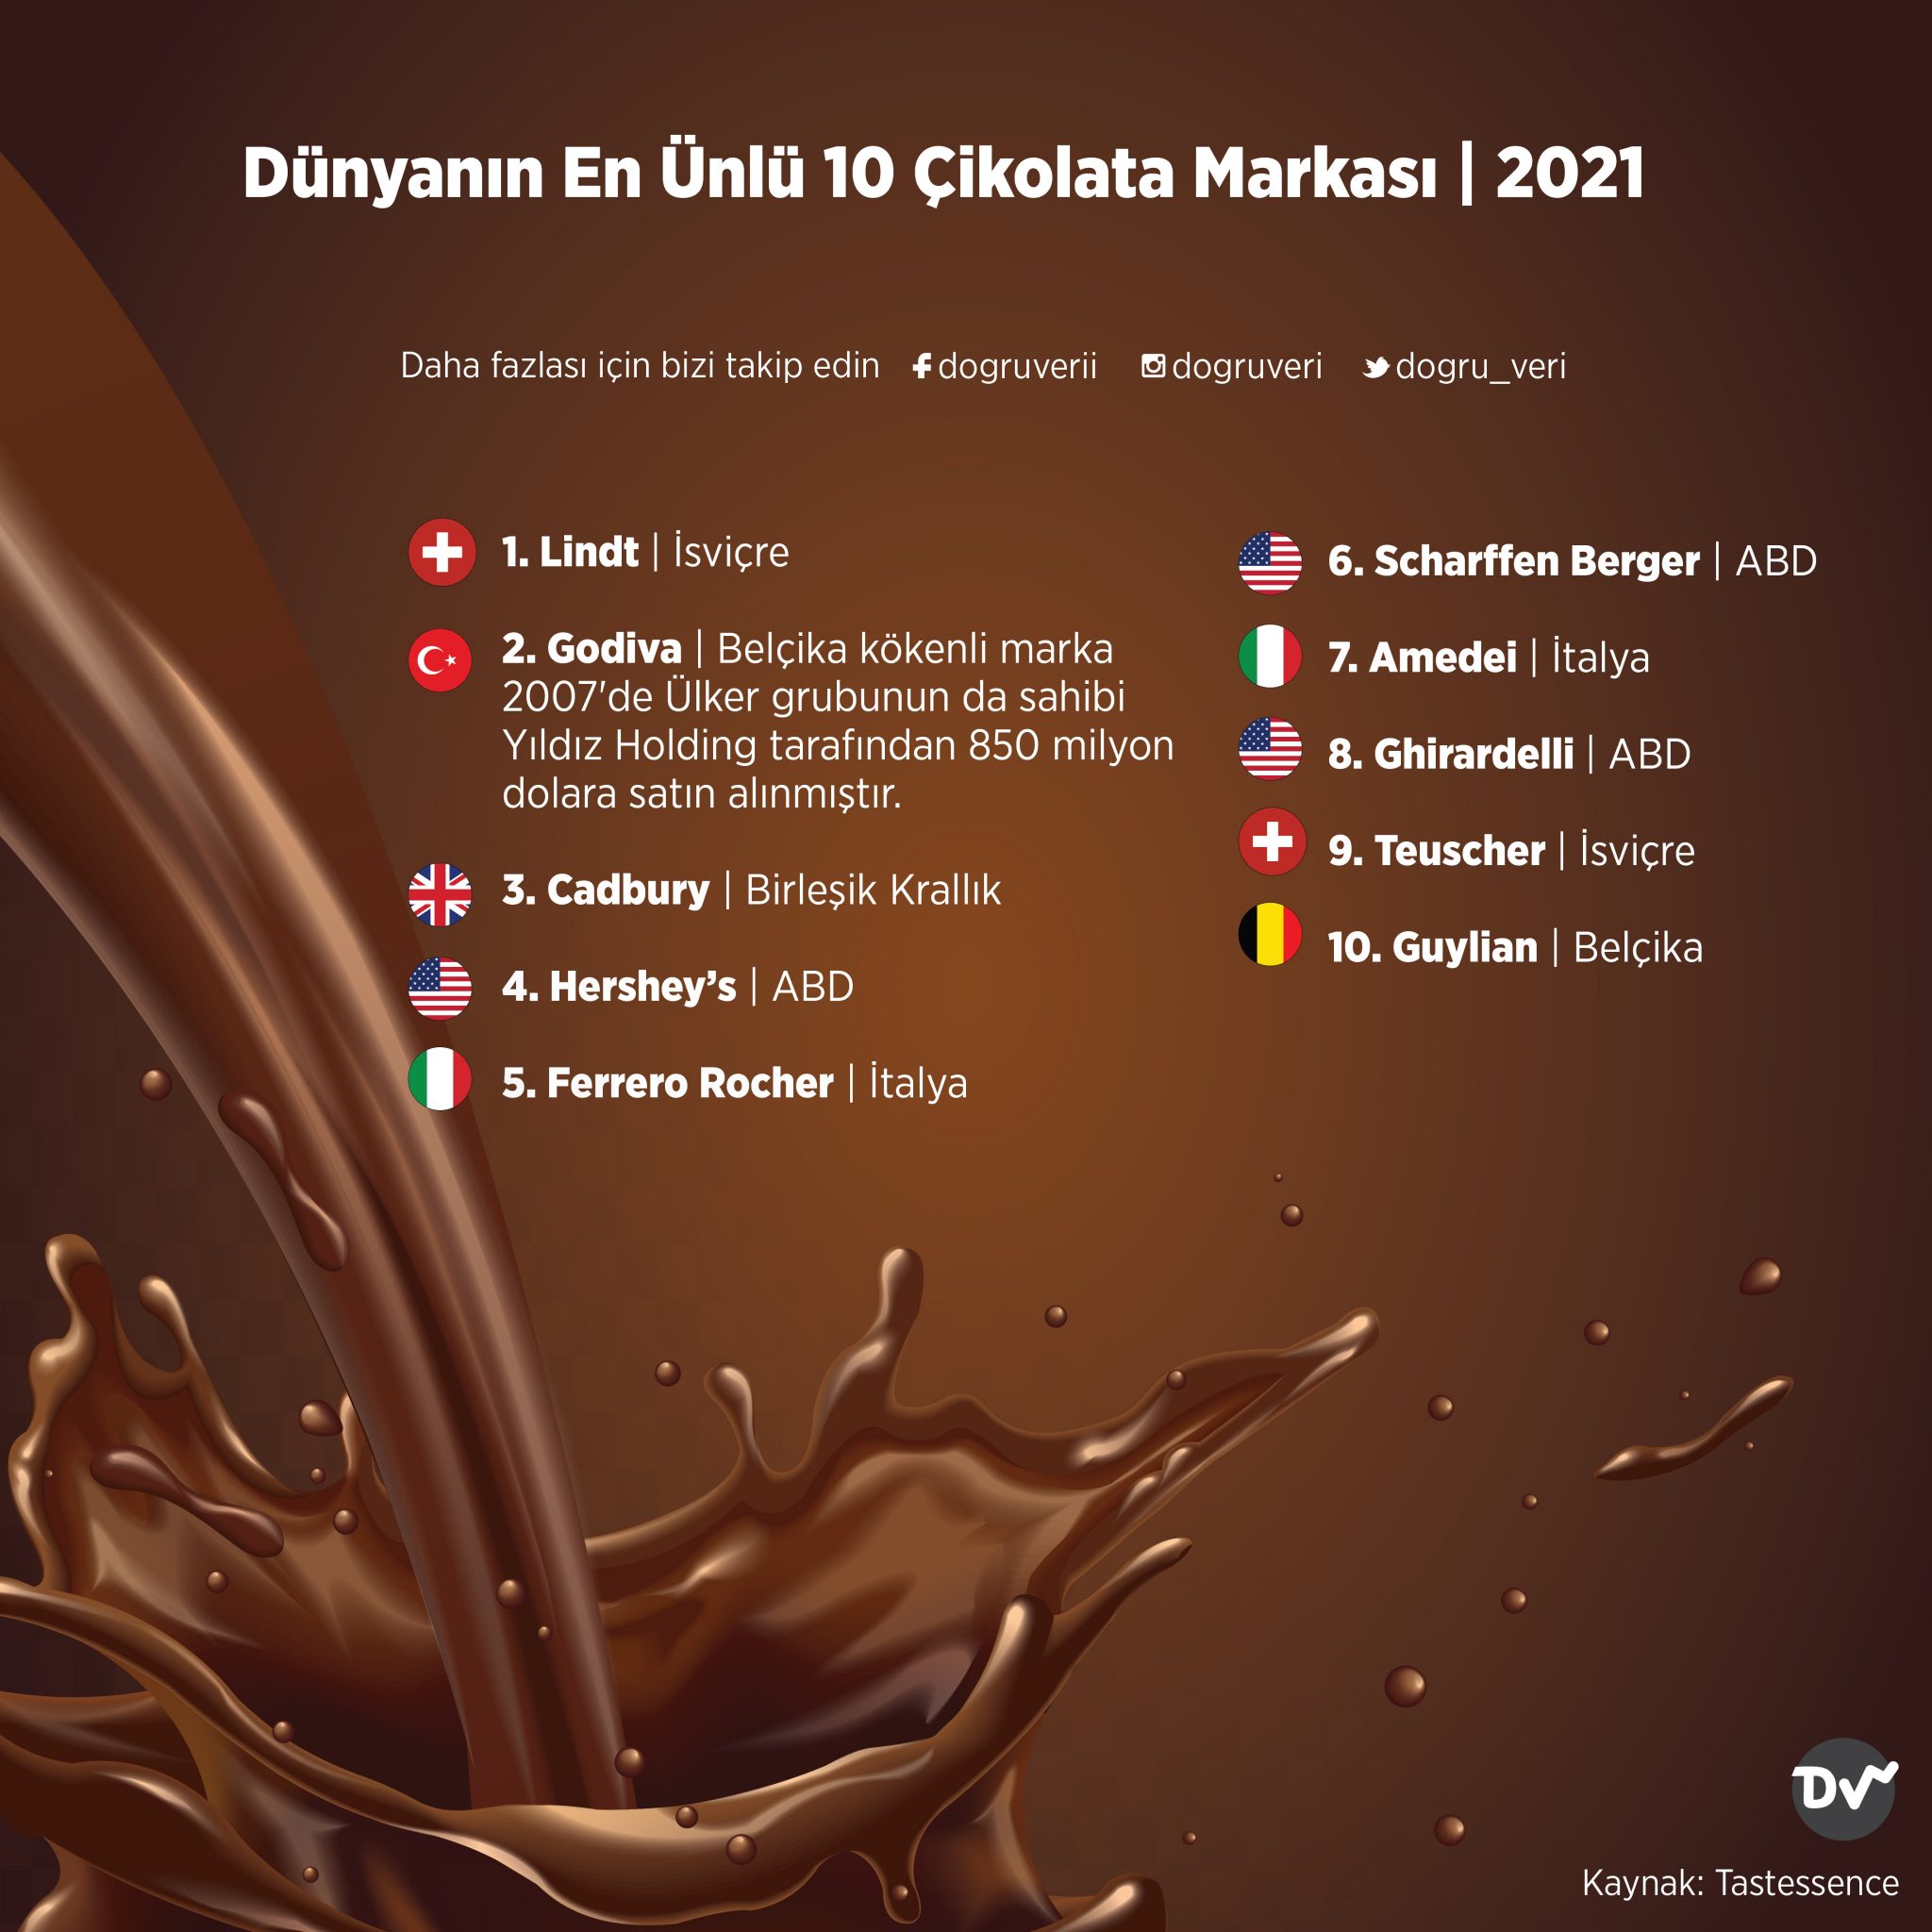 Dünyanın En Ünlü 10 Çikolata Markası, 2021 Doğru Veri